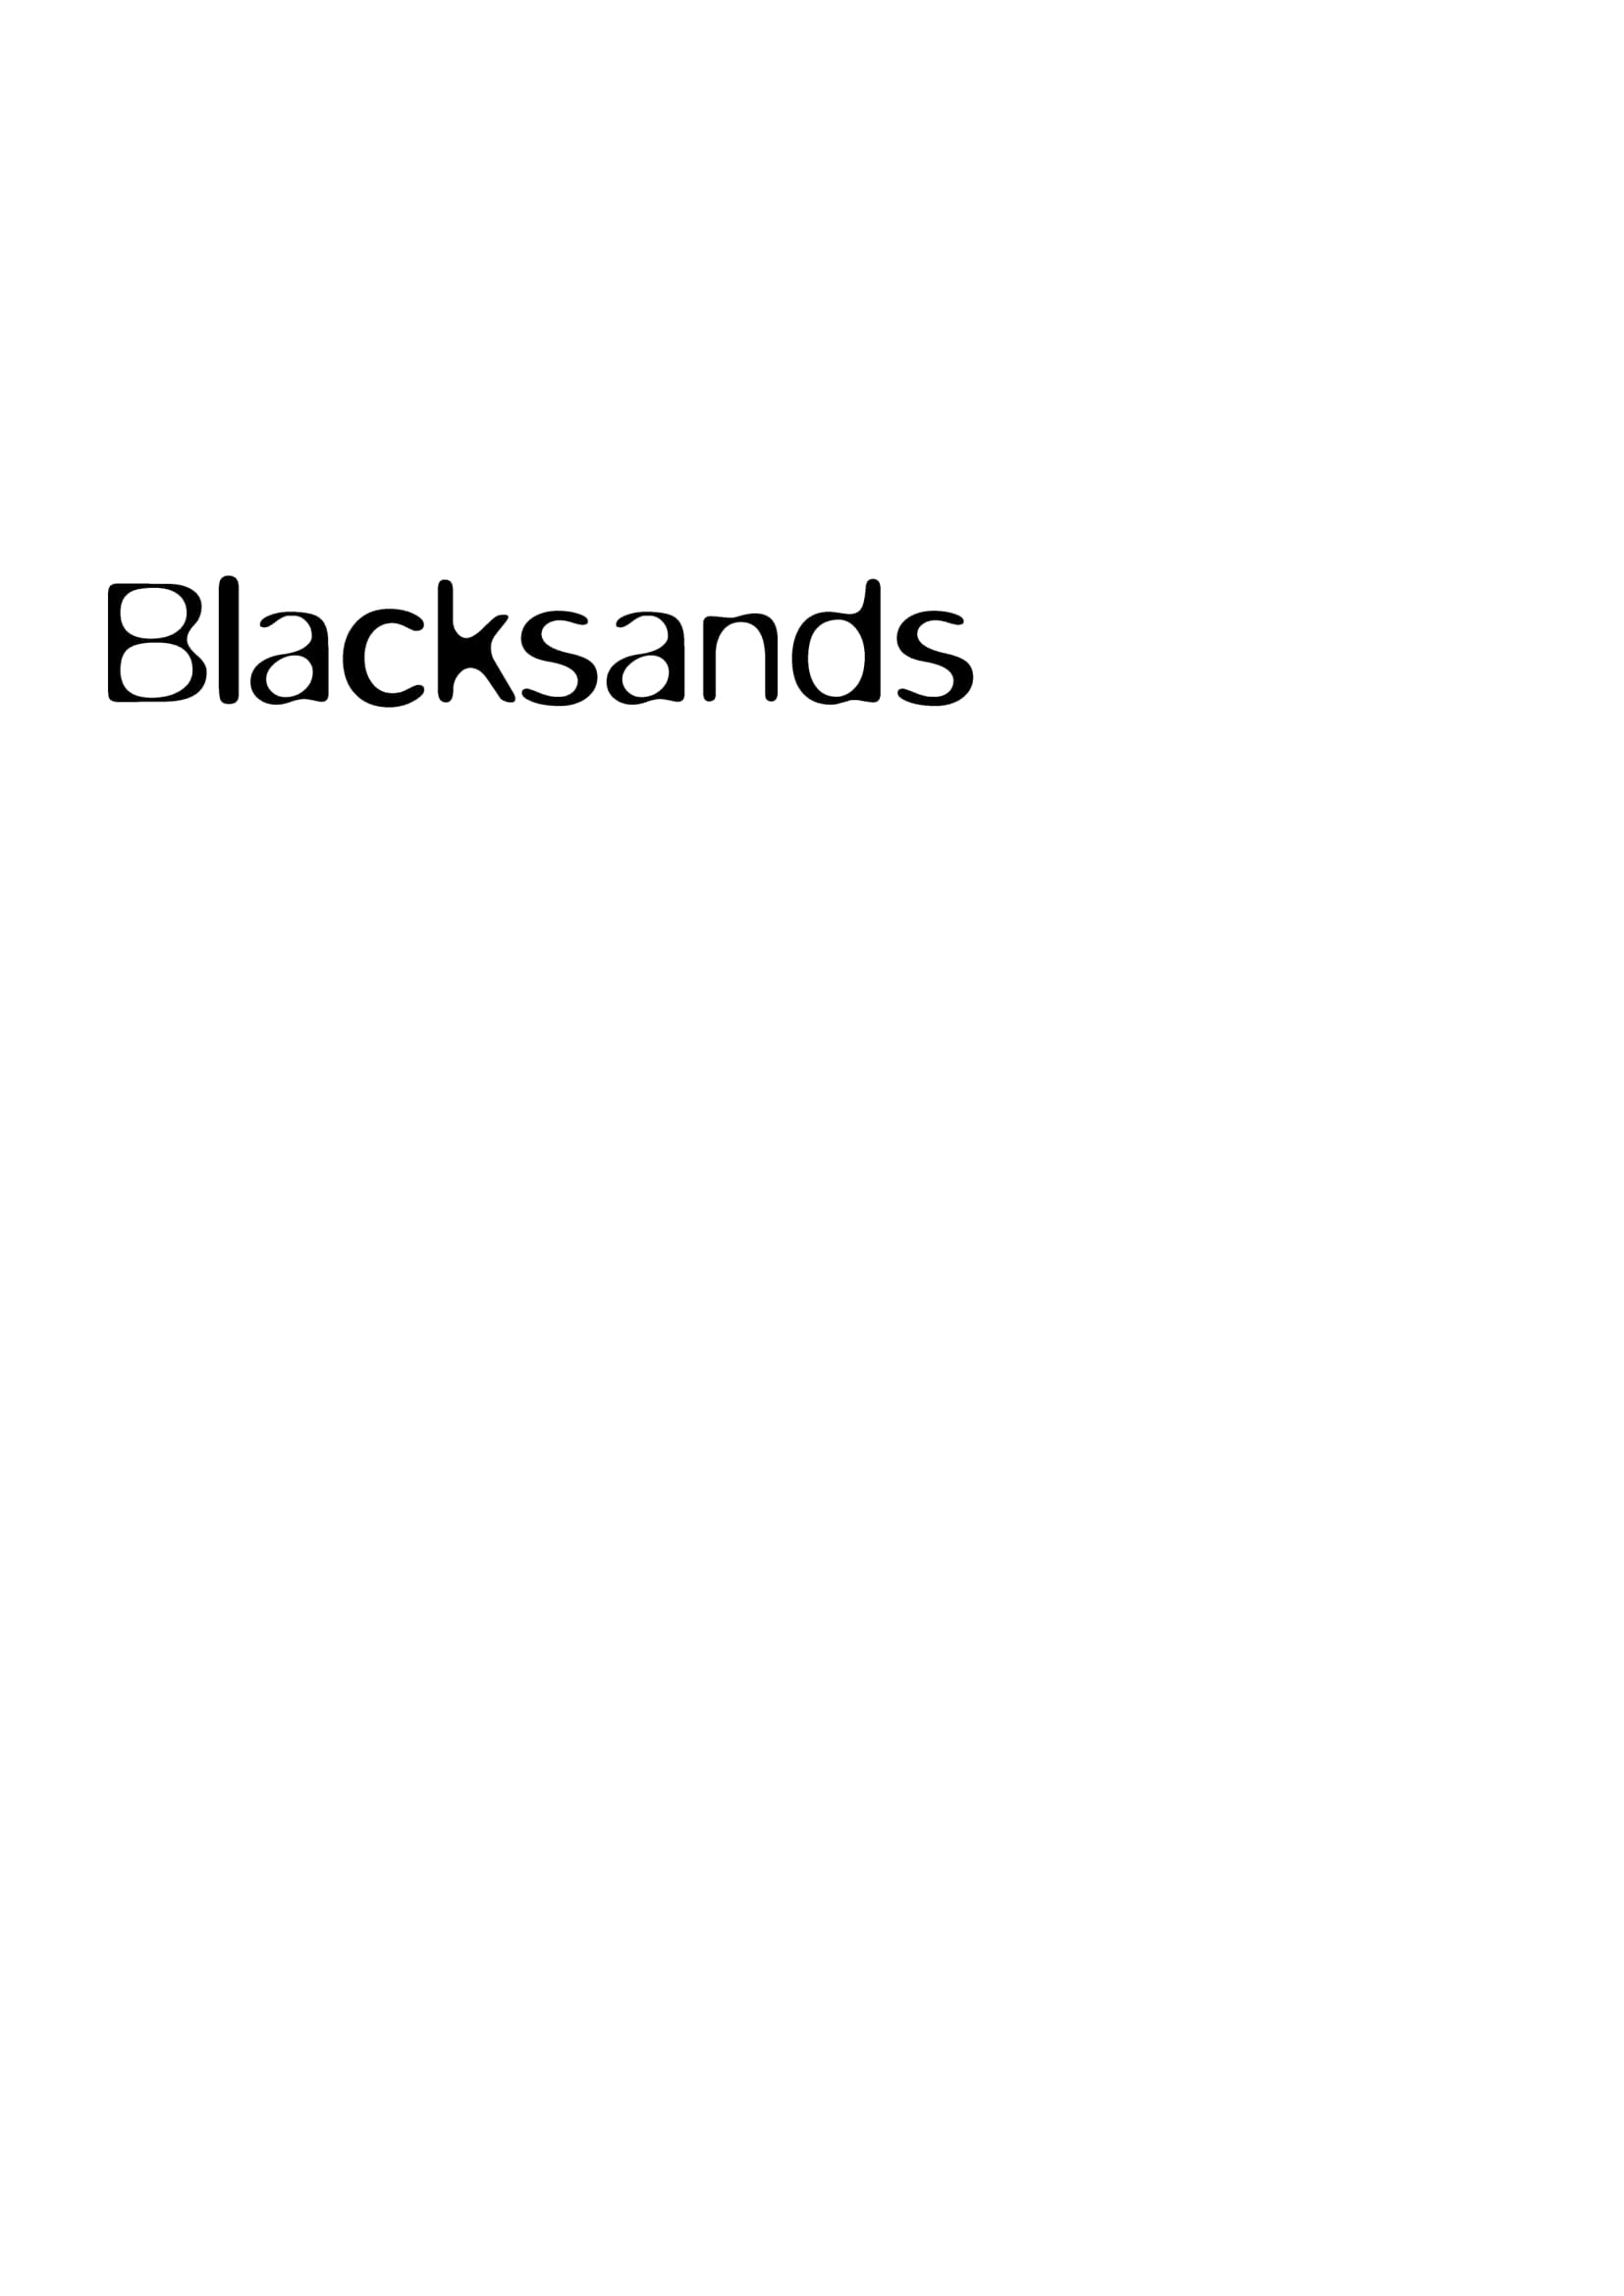 Sands Logo - Black Sands logo forcharlie-1 | Blue Fizz Events